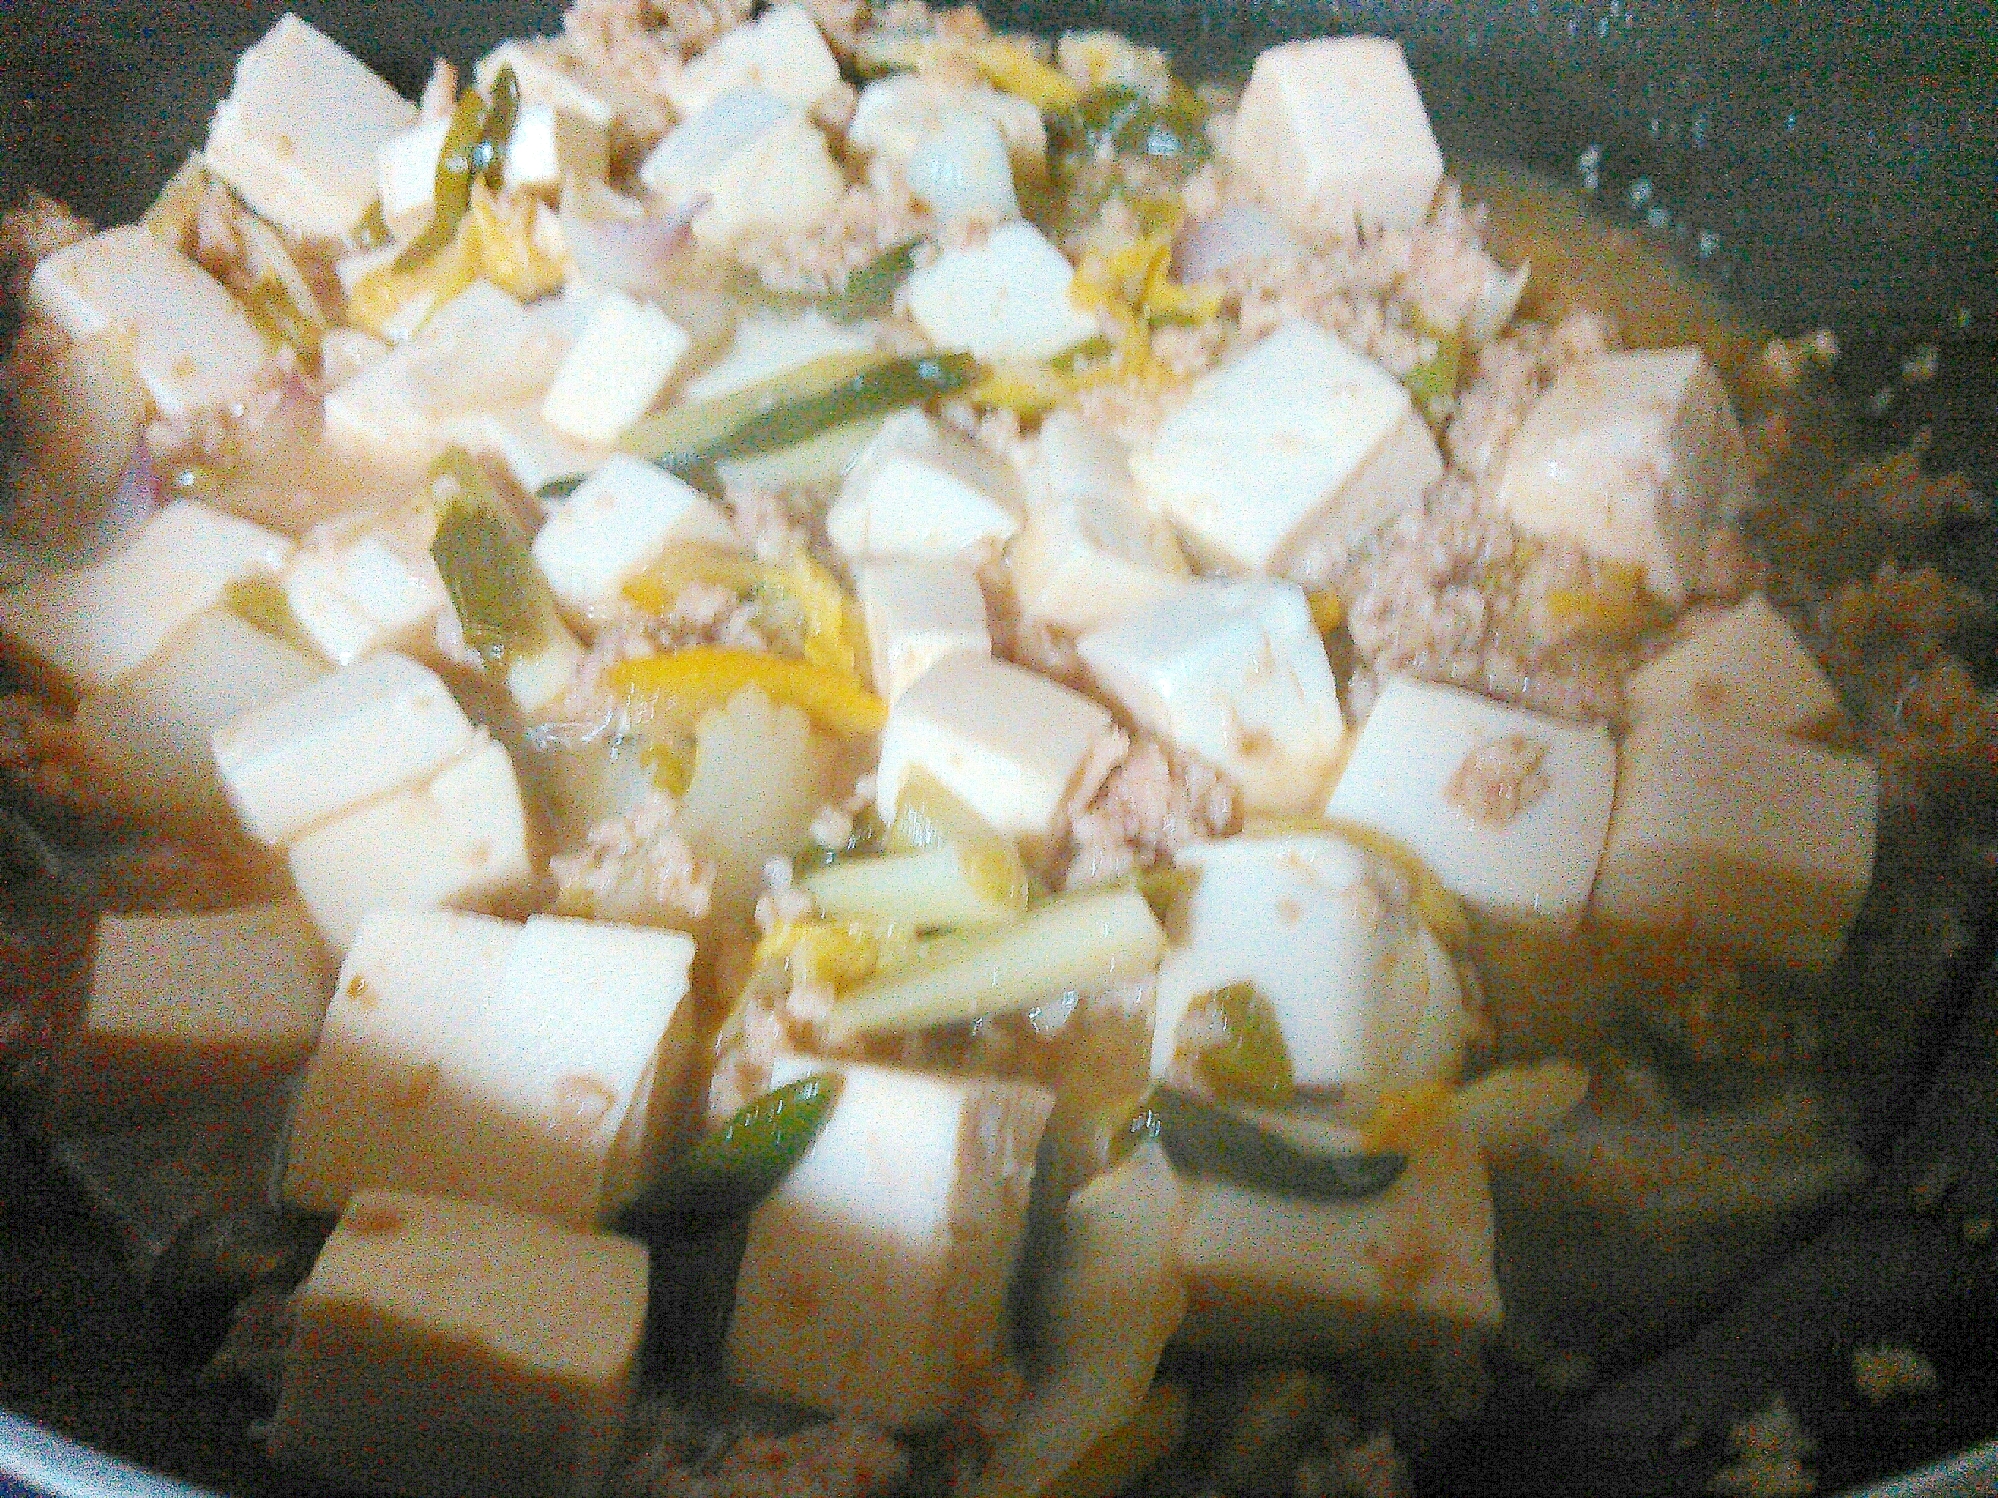 豆腐と豚挽き肉アサツキ柚子の炒めもの